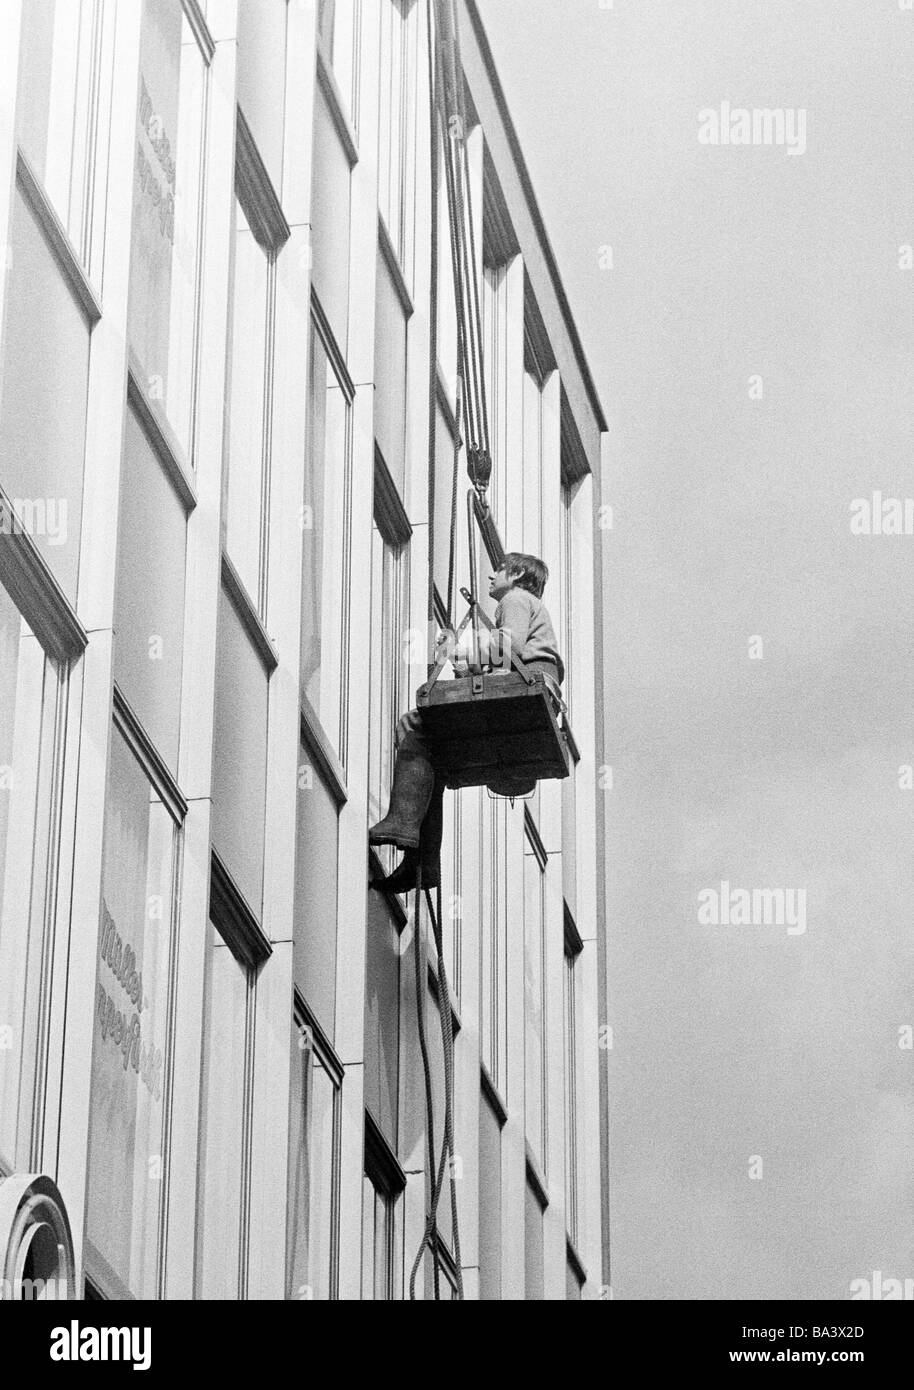 70 fotografías en blanco y negro, ocupación, limpiacristales trabajando sobre la fachada de un bloque de gran altura, el hombre, de 25 a 35 años de edad Foto de stock